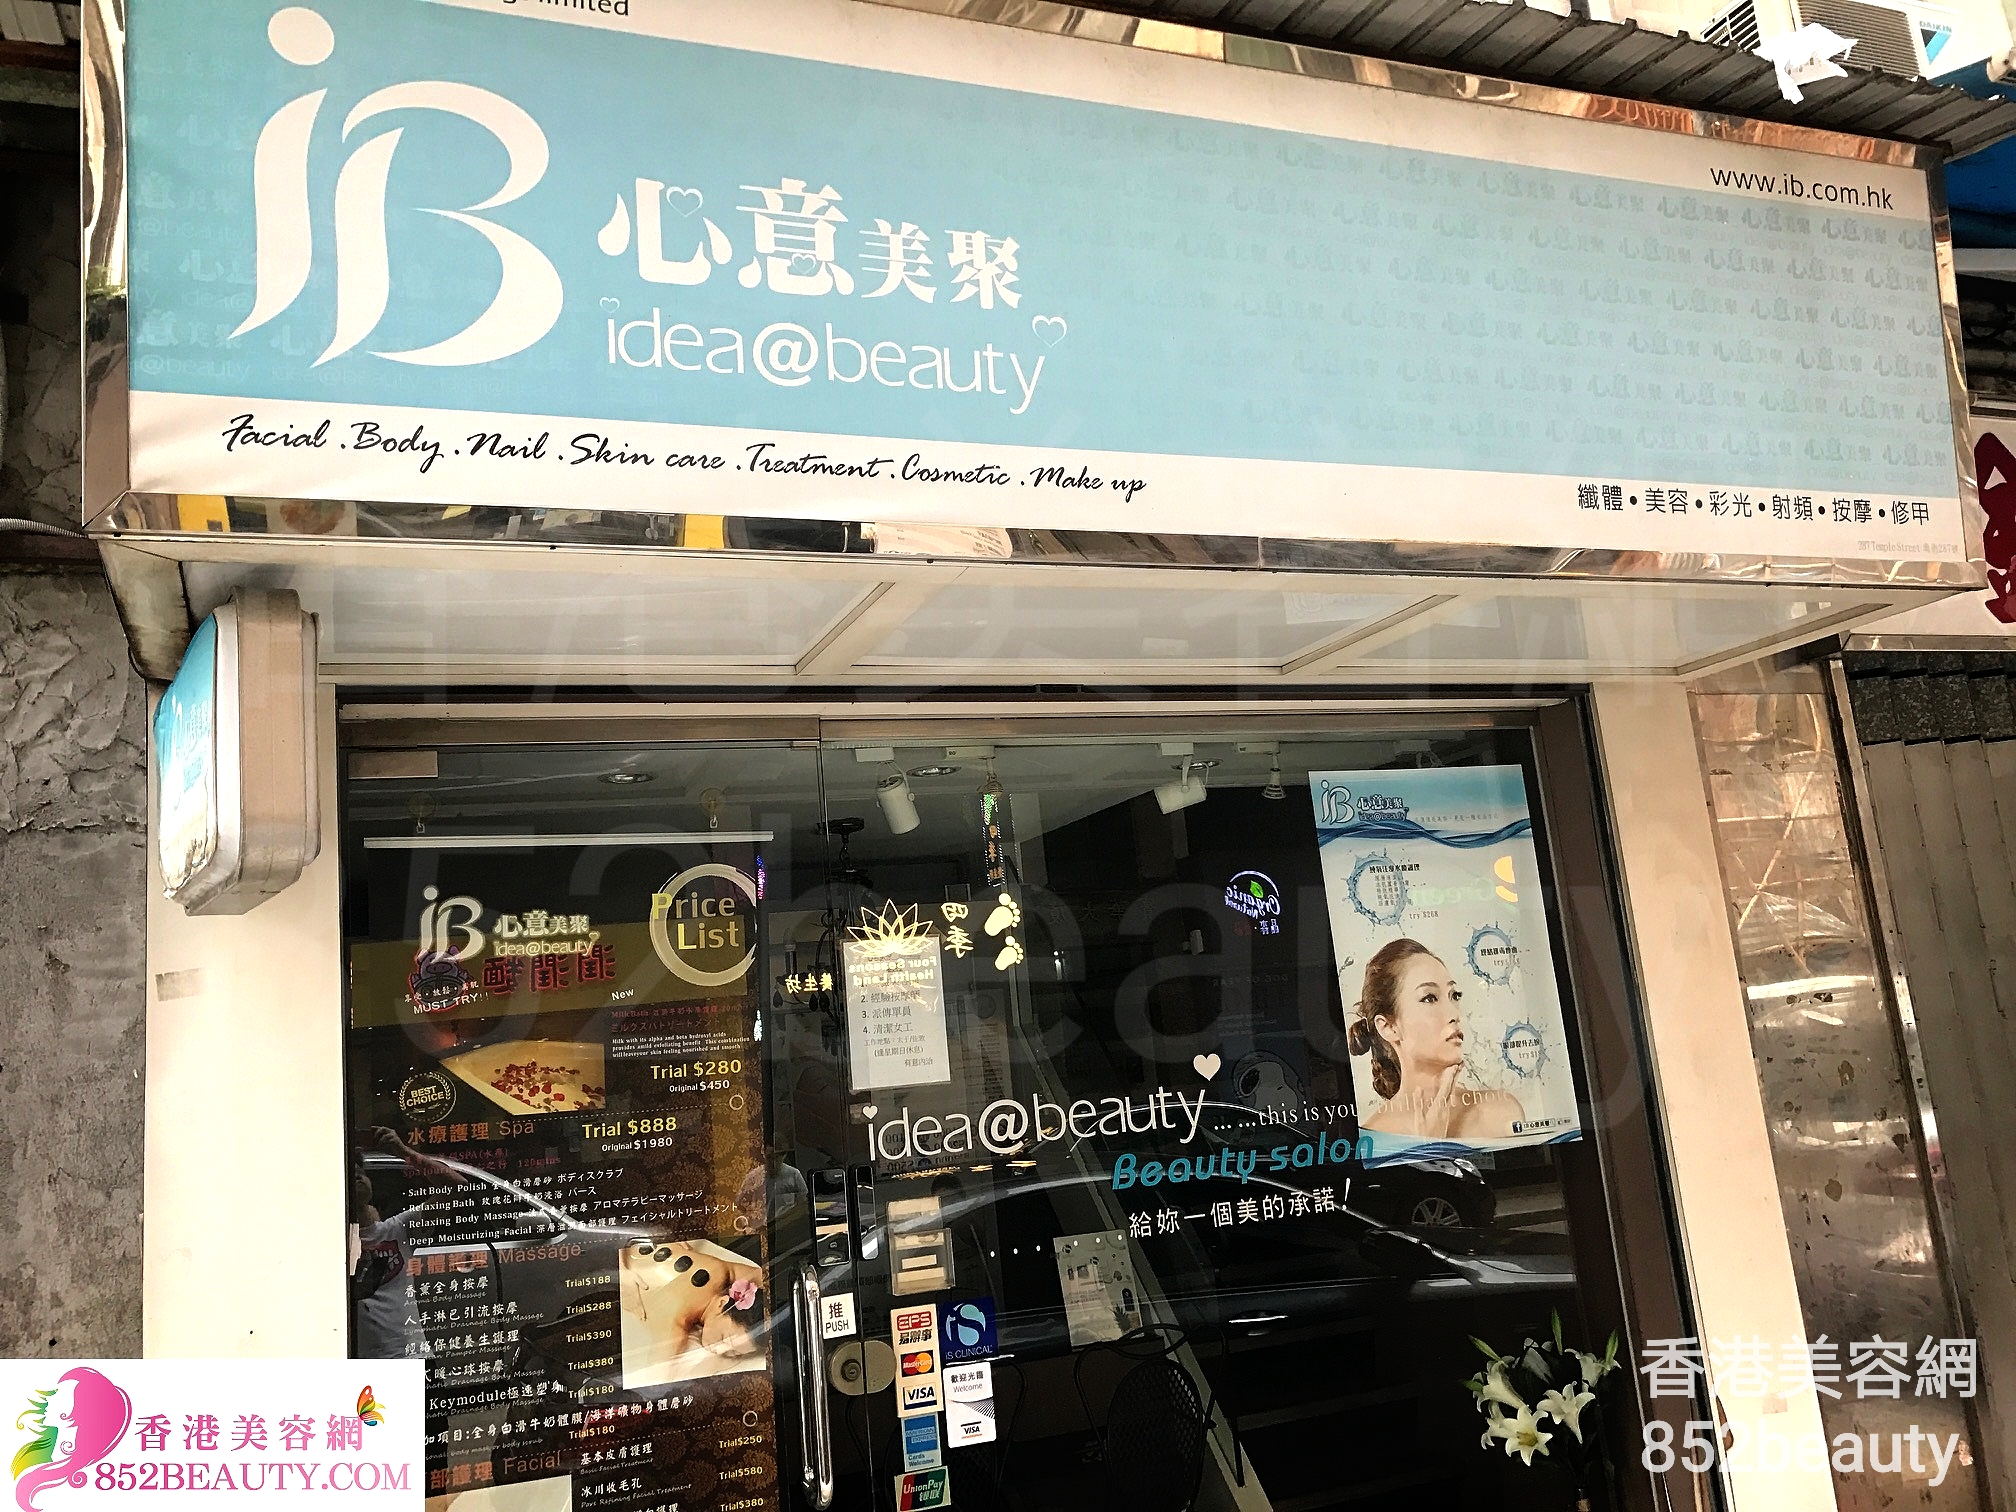 香港美容網 Hong Kong Beauty Salon 美容院 / 美容師: ib心意美聚